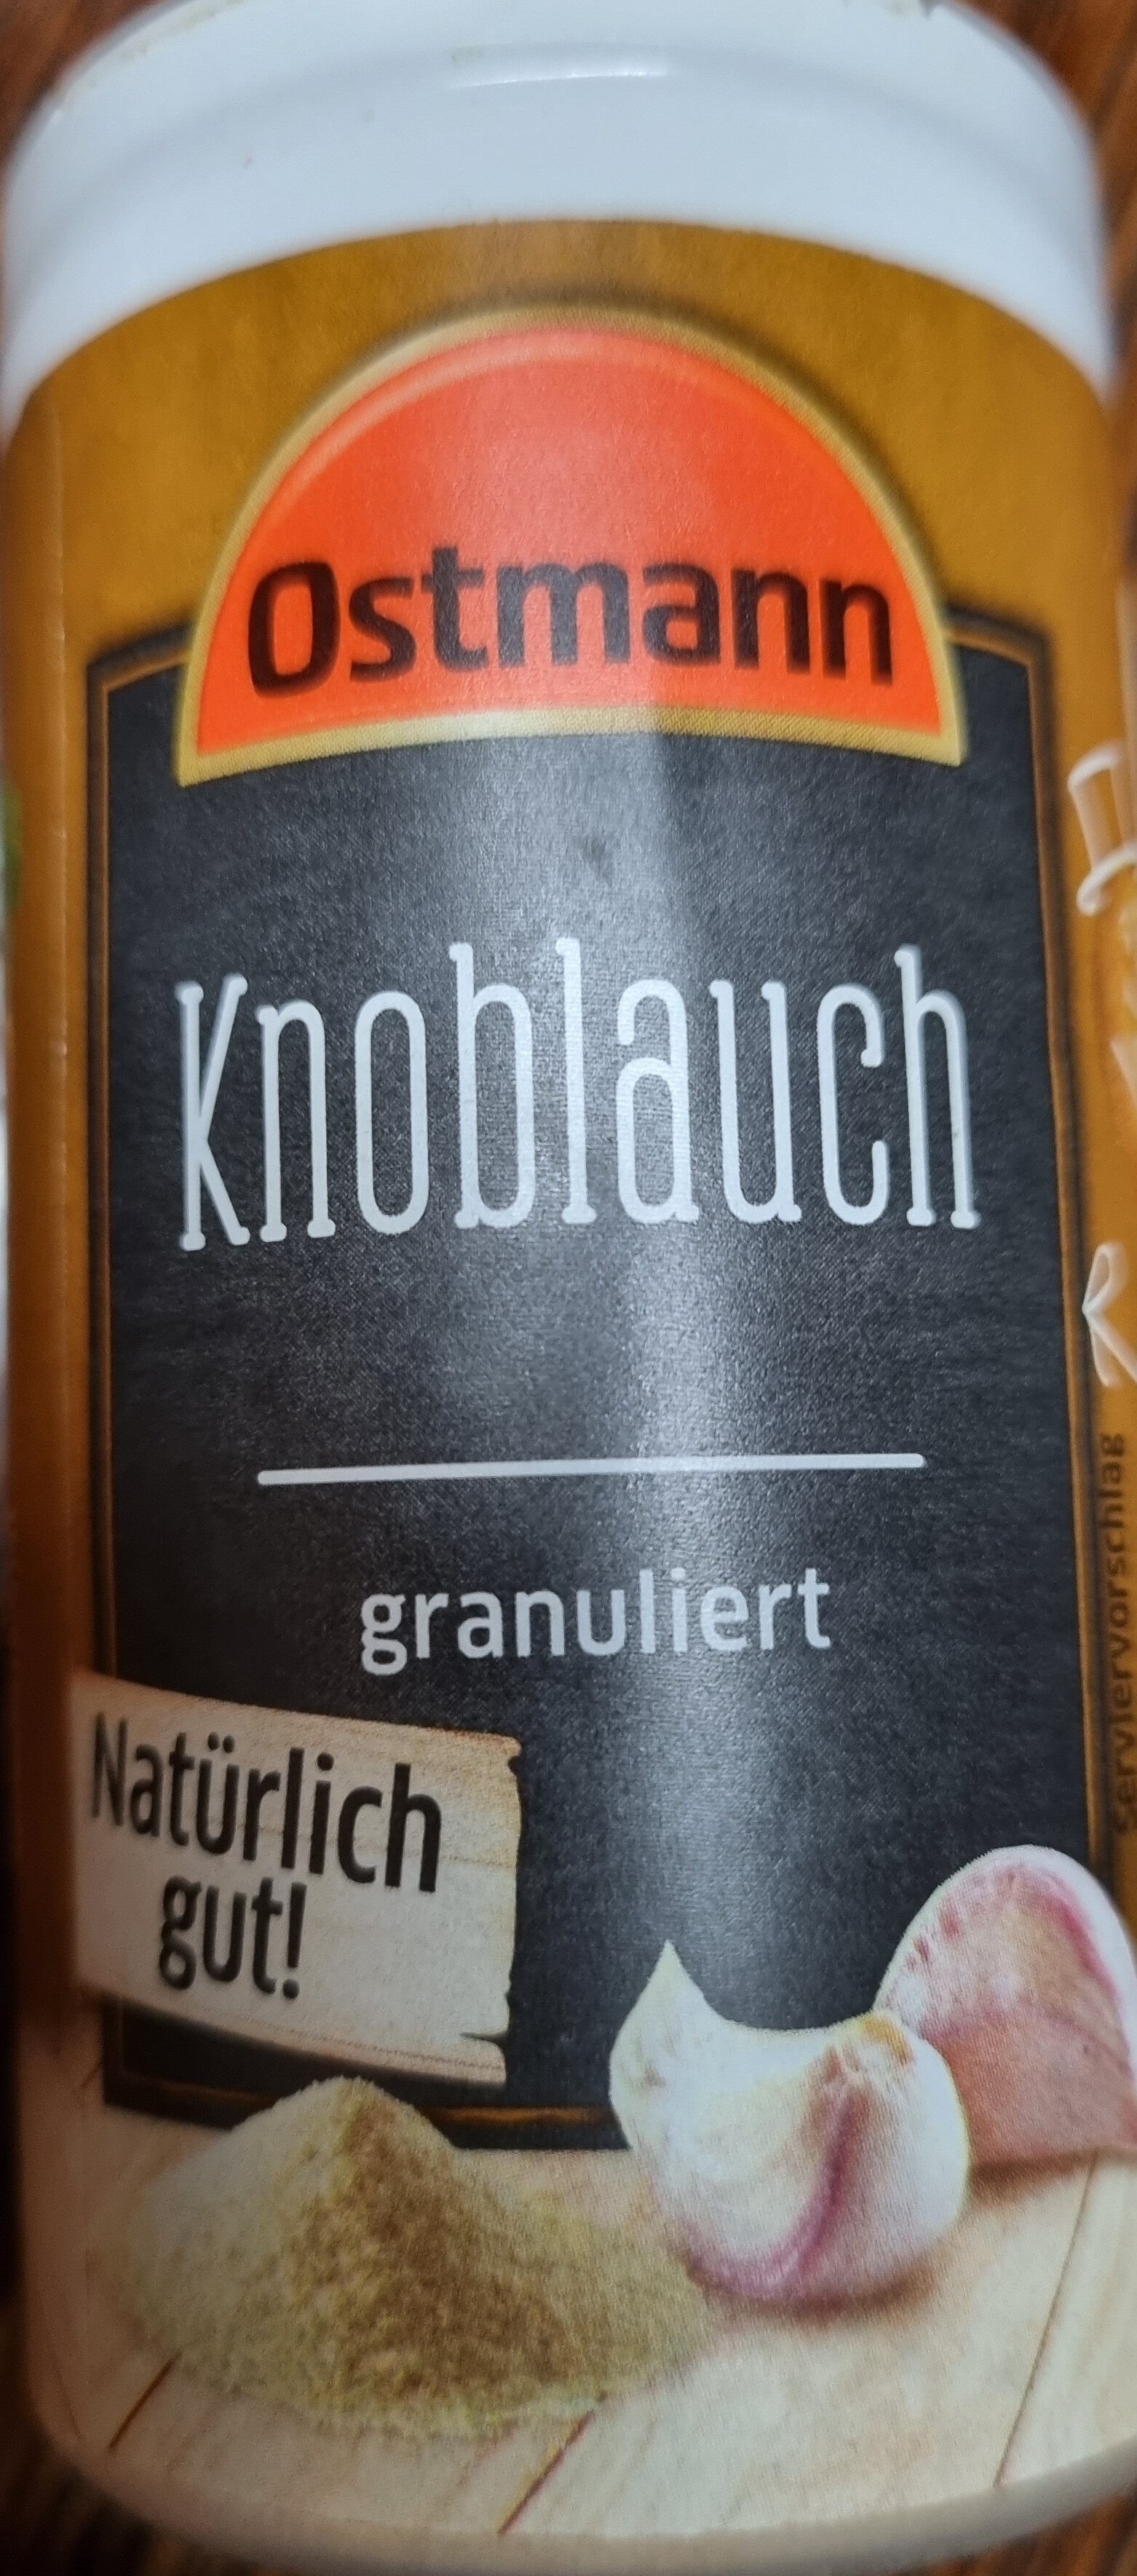 Knoblauch, granuliert - Ingrédients - de